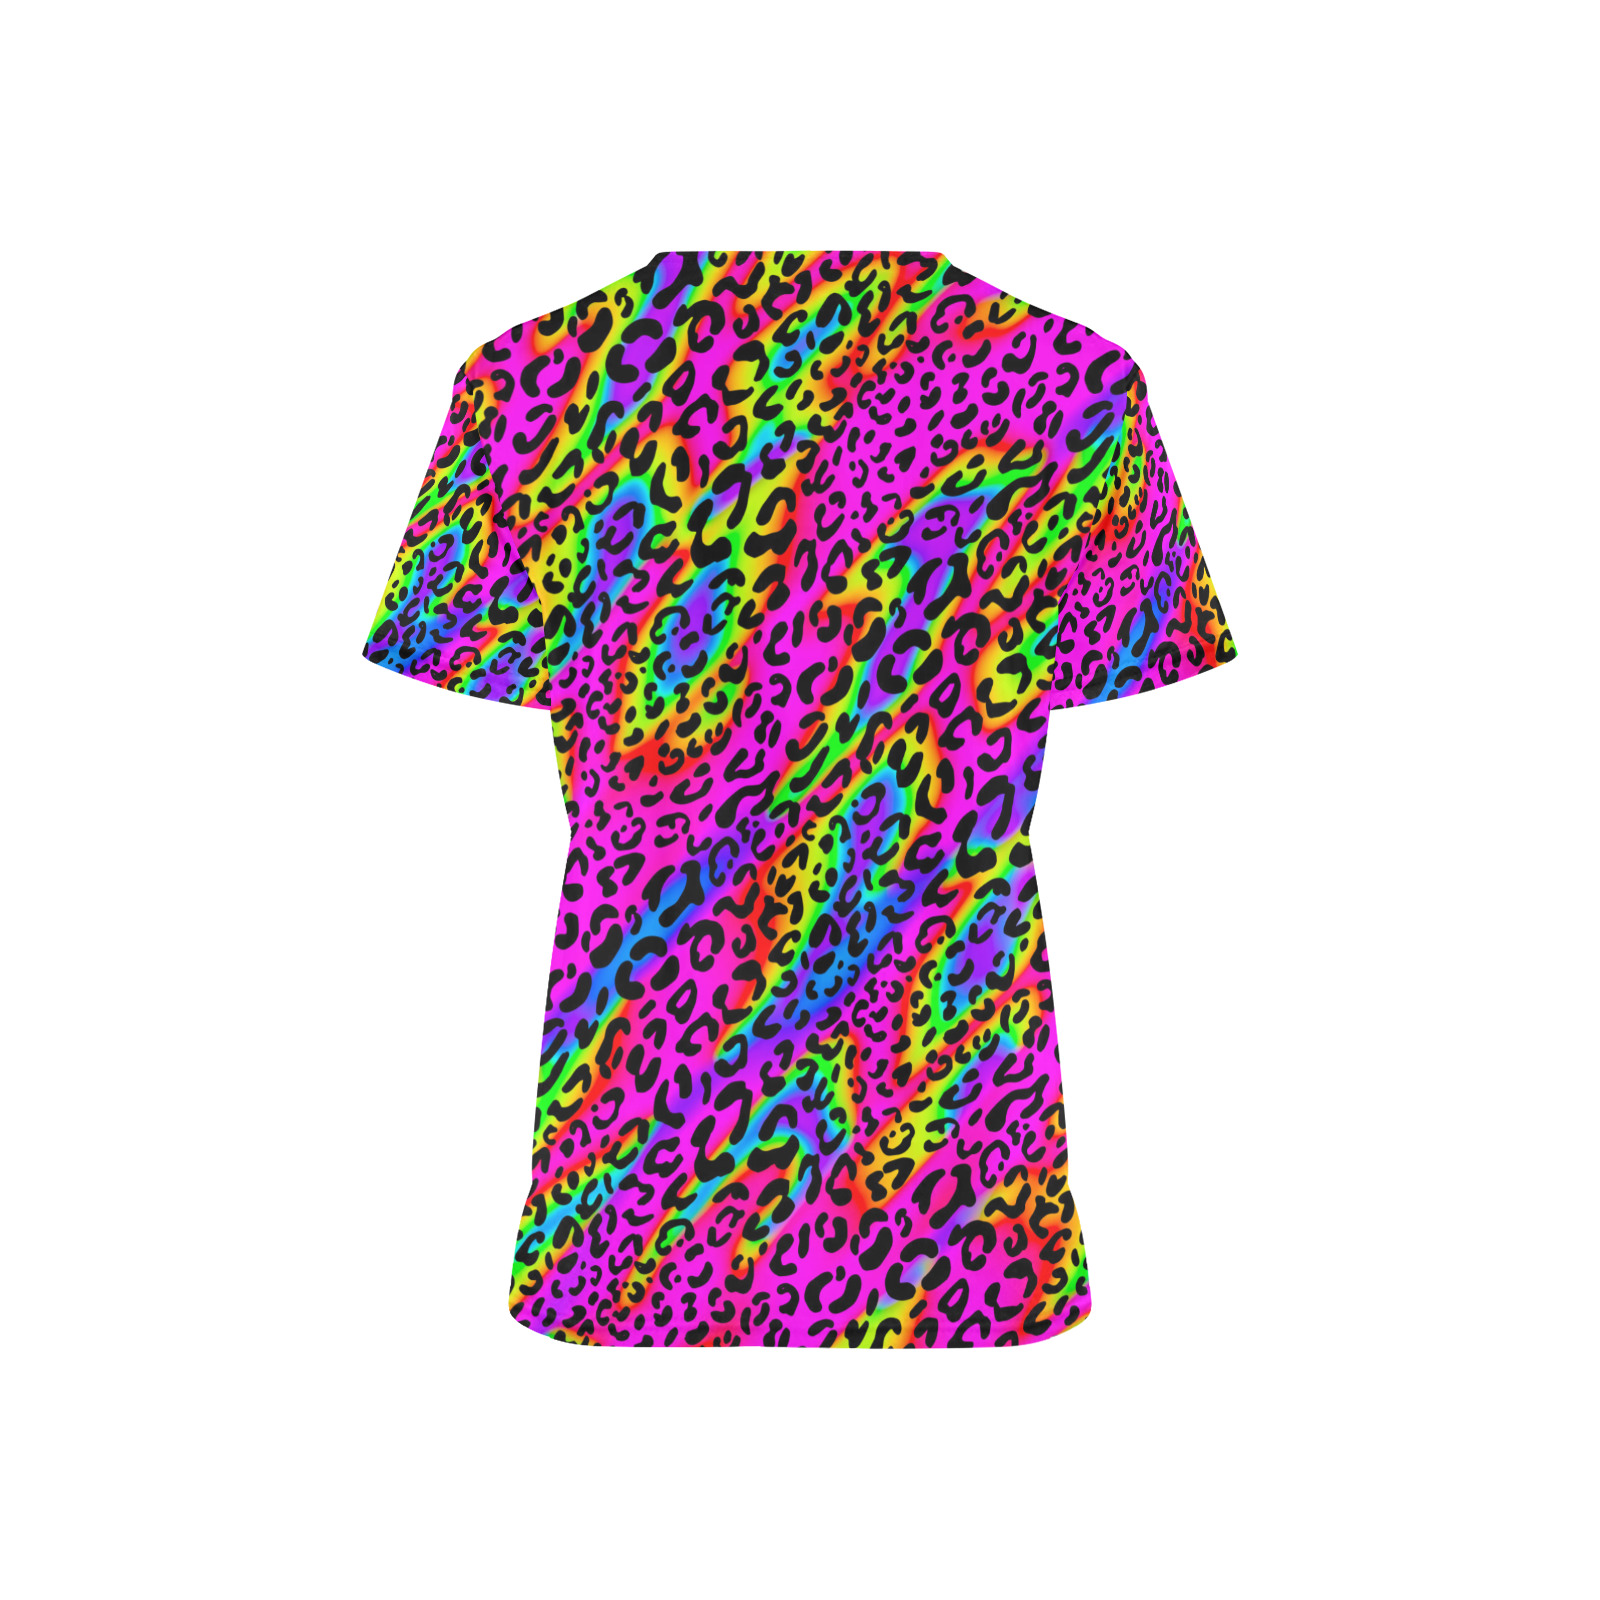 Rainbow Leopard Print pattern Children's Ward All Over Print Scrub Top